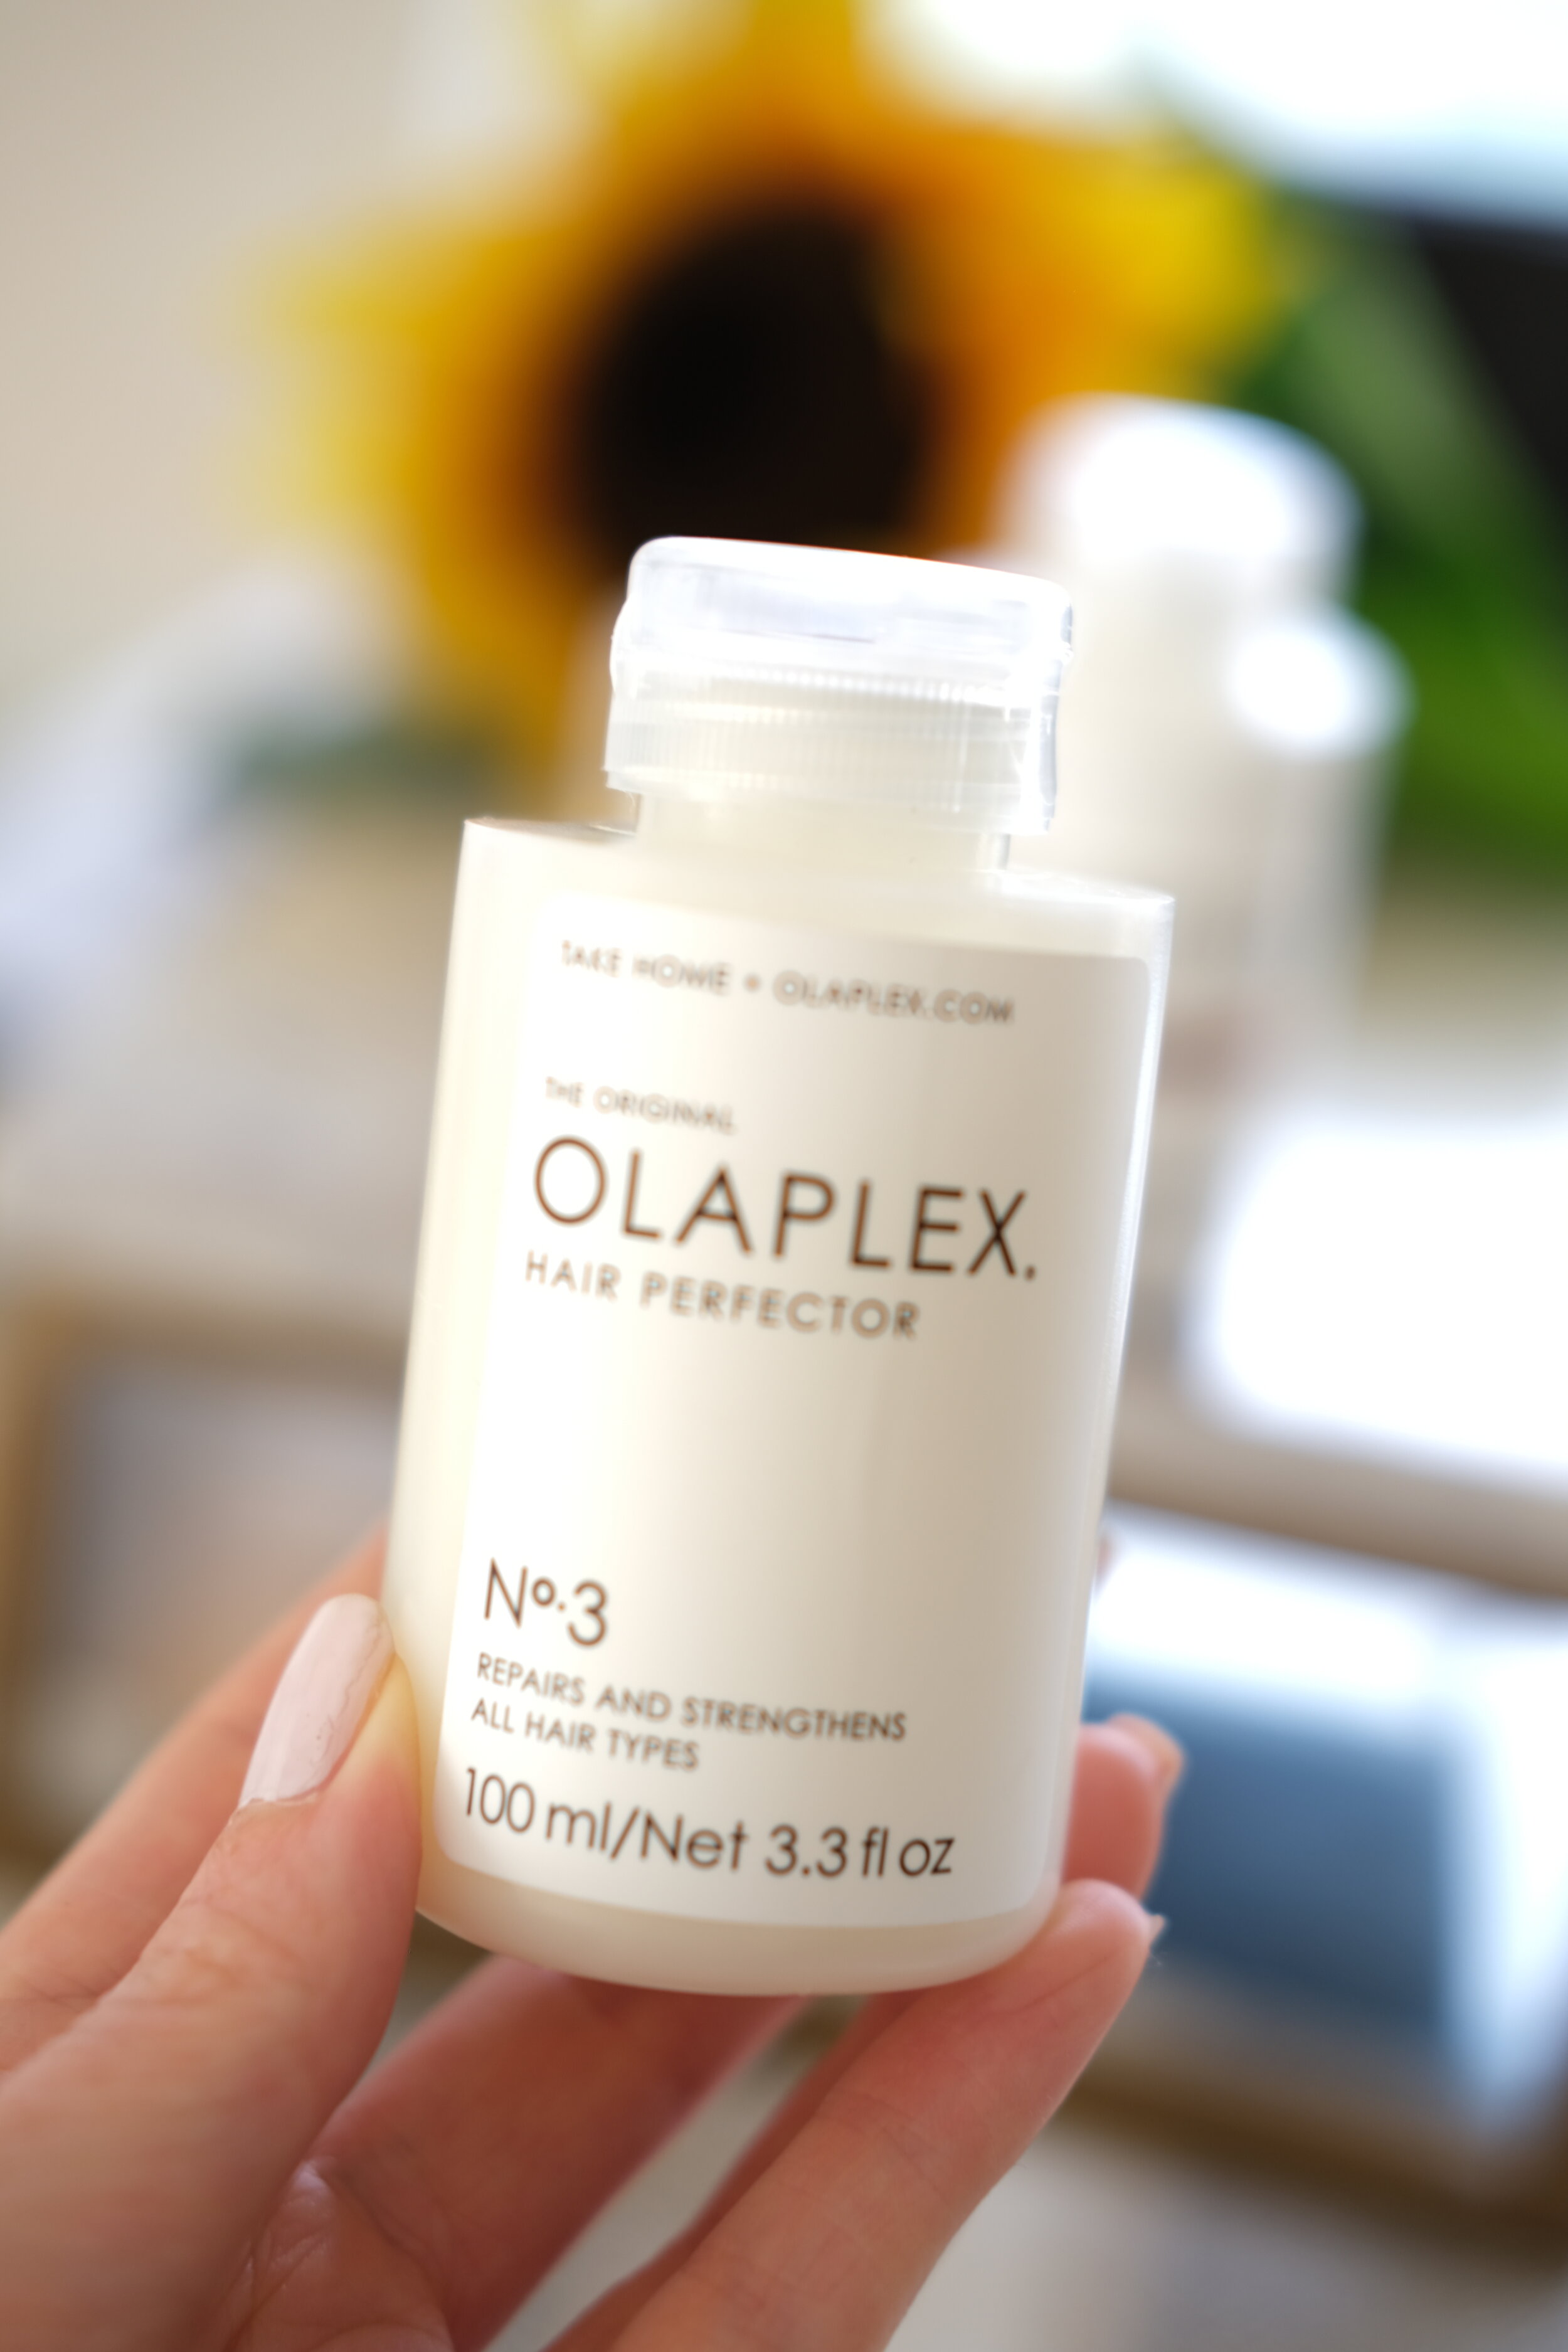 Olaplex Hair Review - Olaplex No.3 Hair Perfector Review